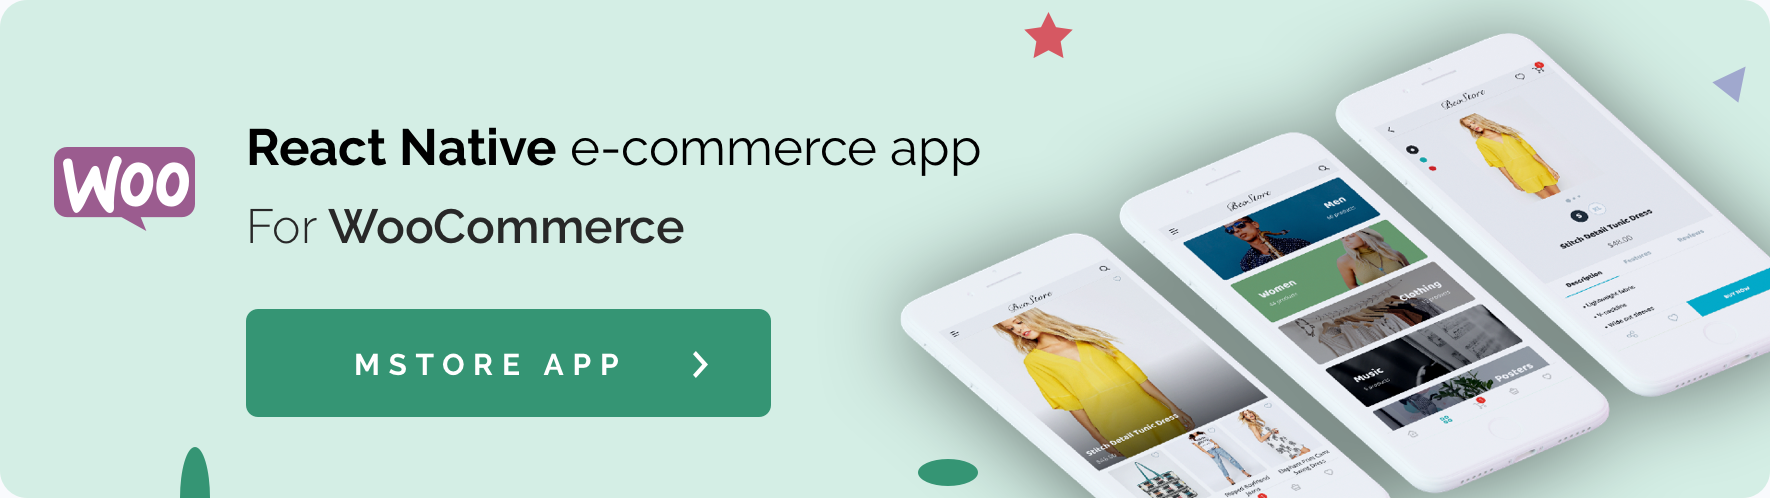 Fluxstore Multi Vendor - Flutter E-commerce Full App - 29